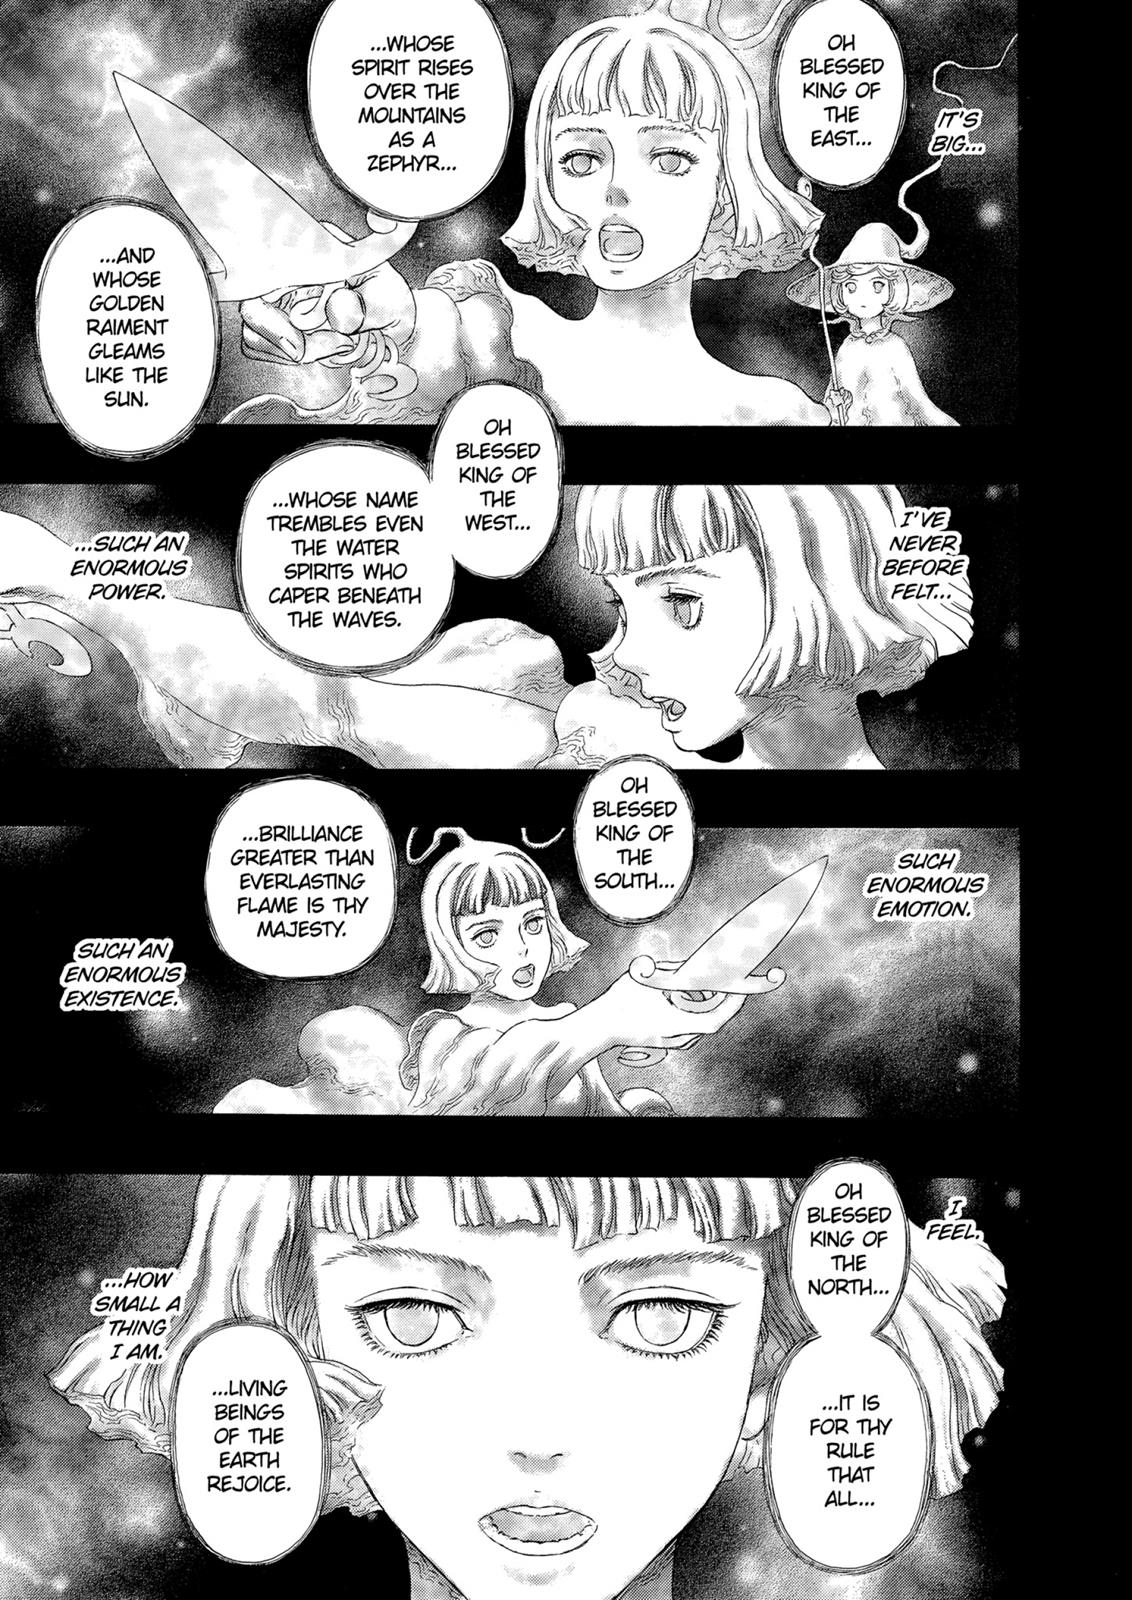 Berserk Manga Chapter 318 image 02